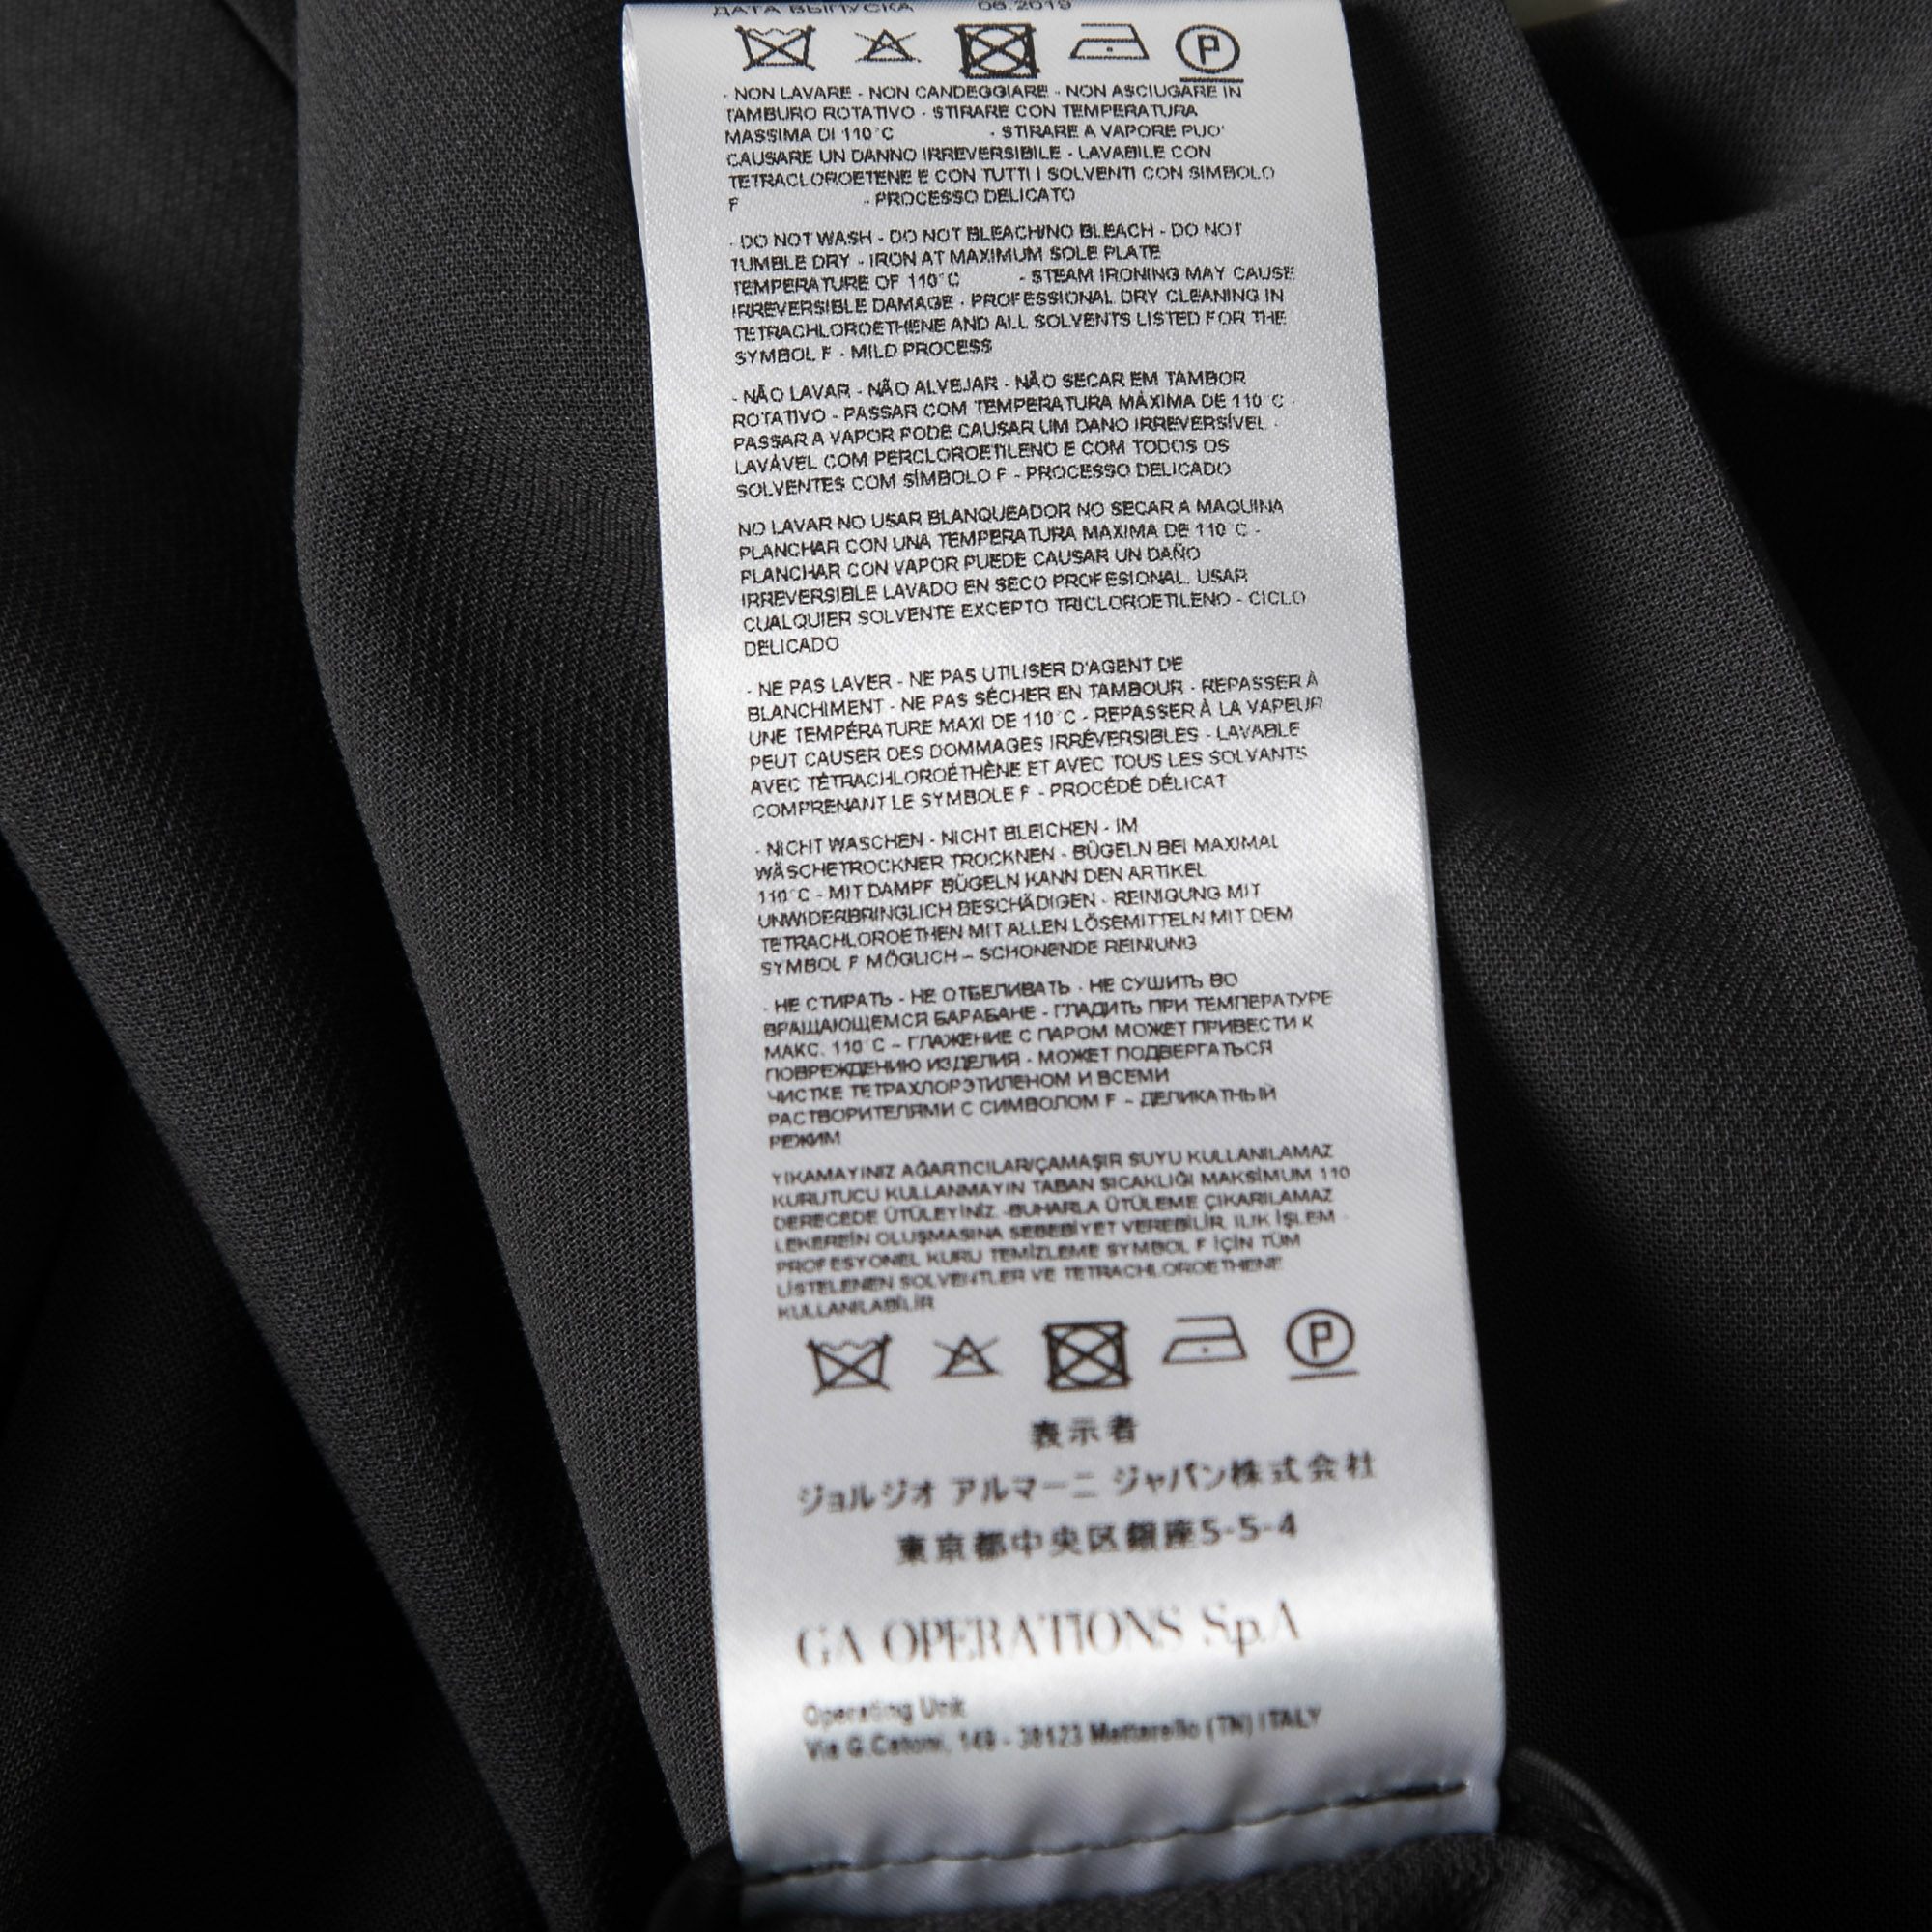 Giorgio Armani Charcoal Grey Wool Trousers L